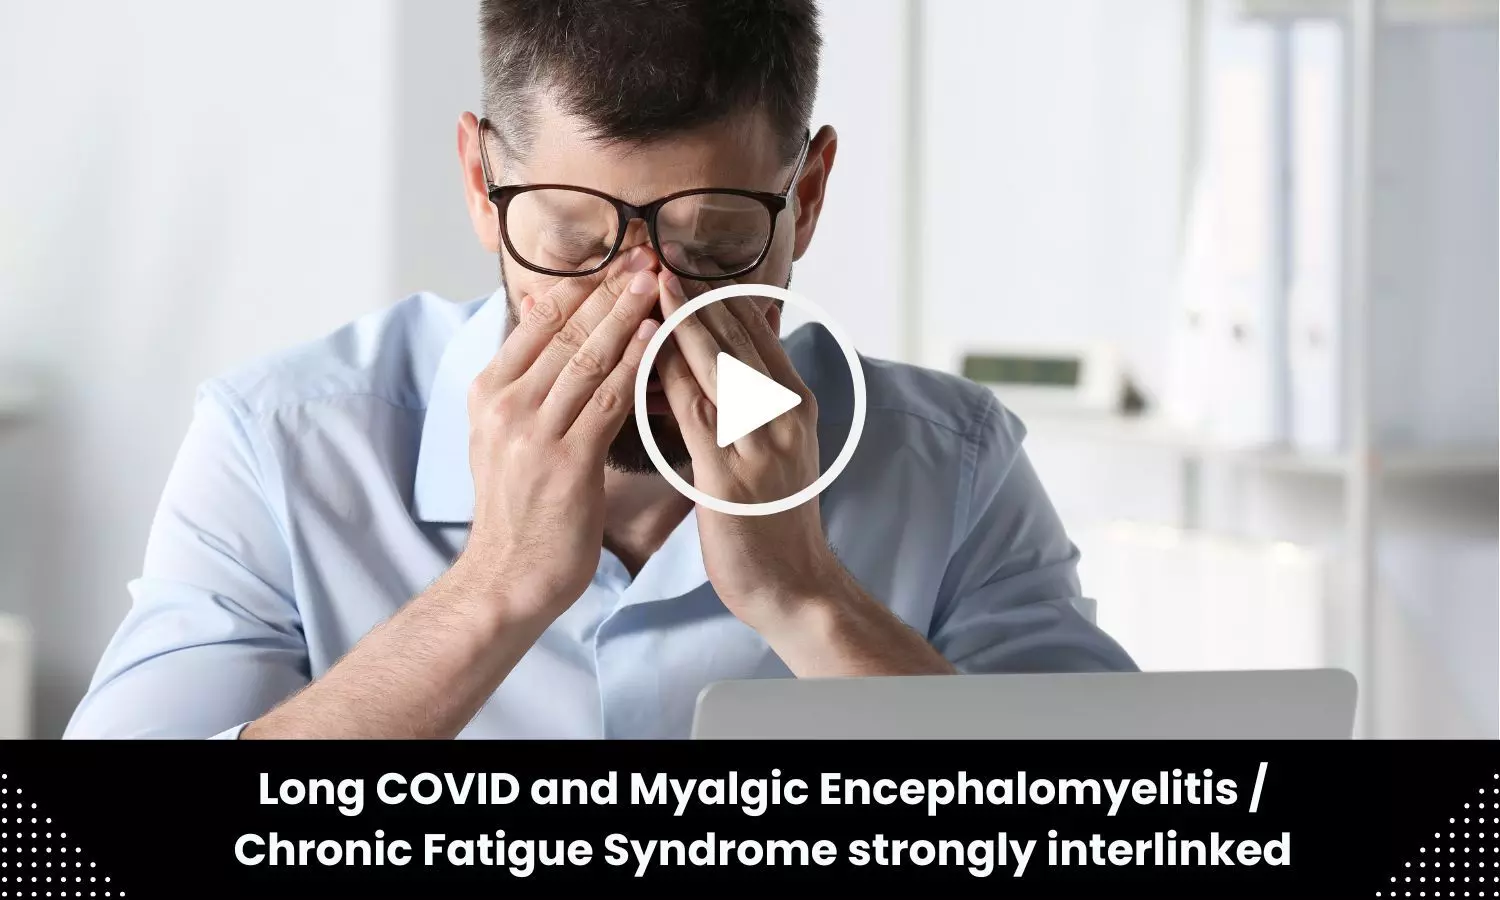 Long COVID and Myalgic Encephalomyelitis / Chronic Fatigue Syndrome strongly interlinked